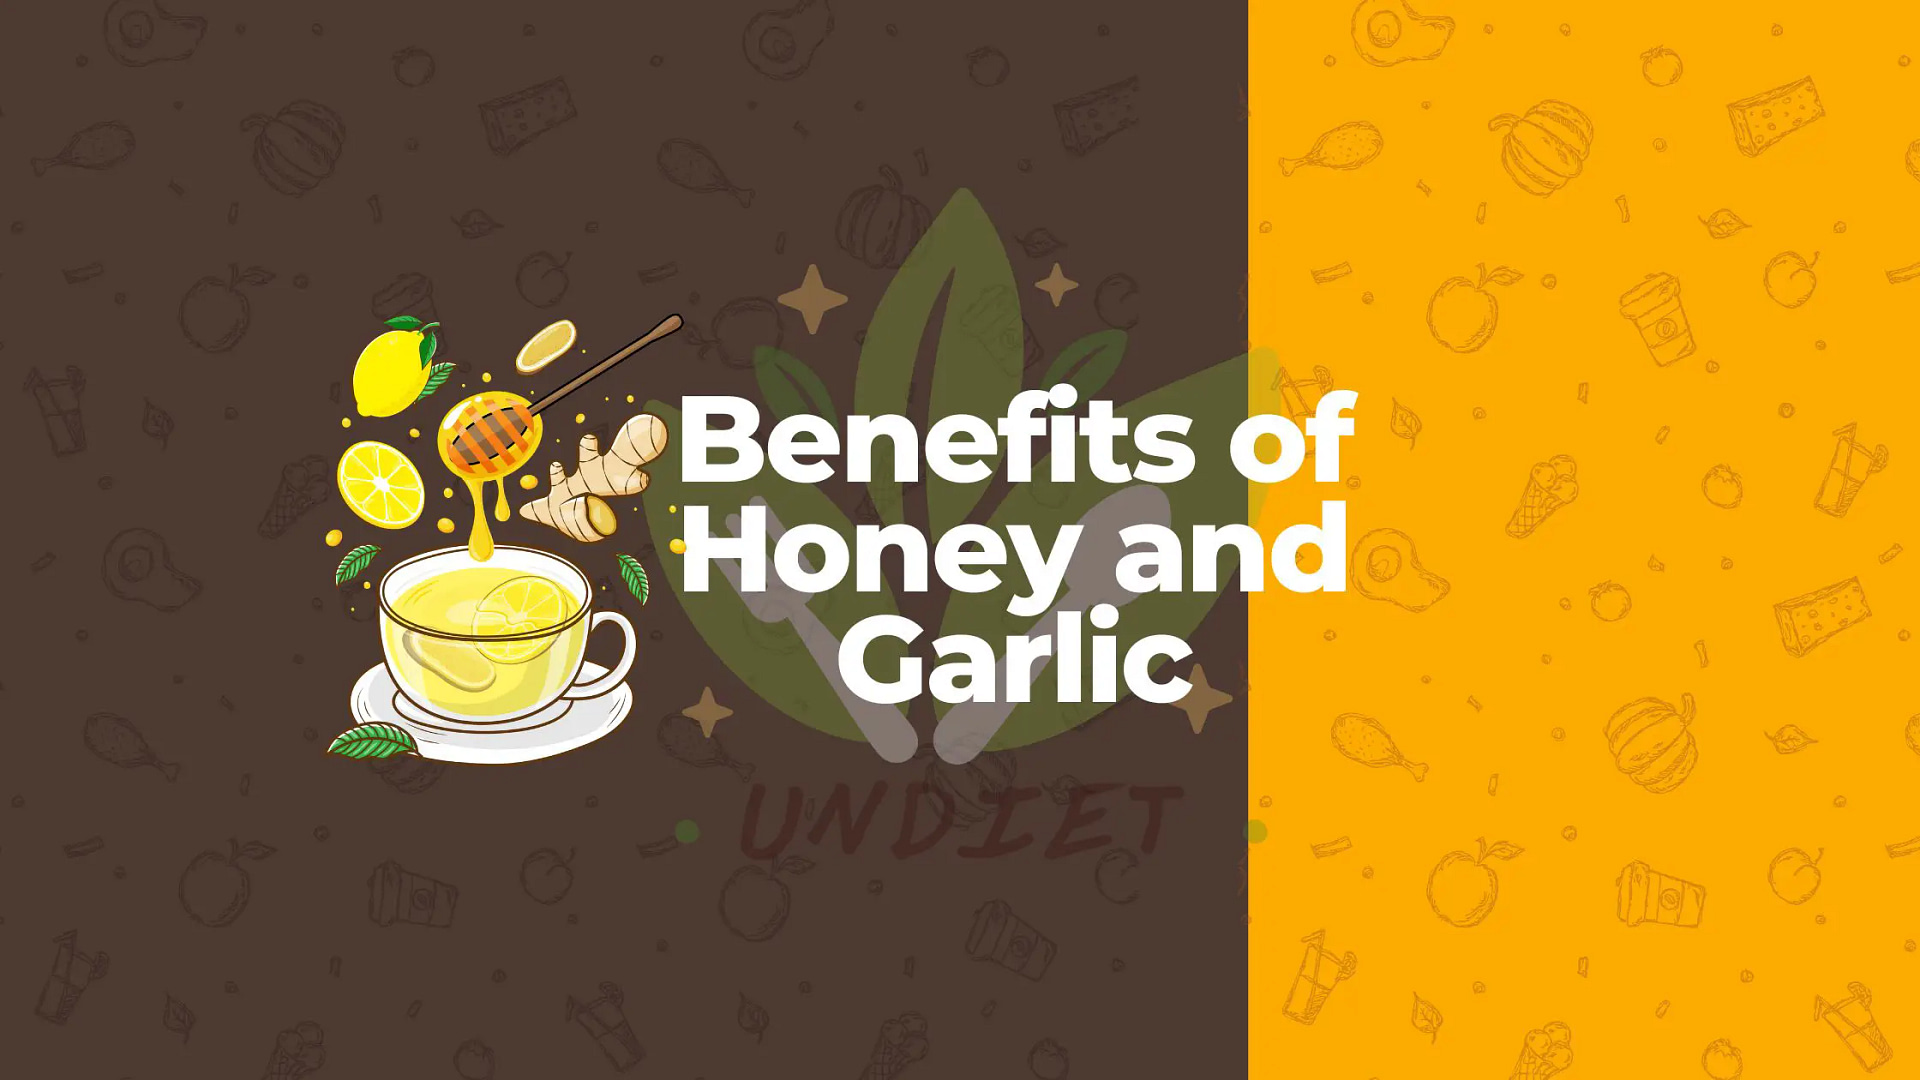 Benefits of Honey and Garlic